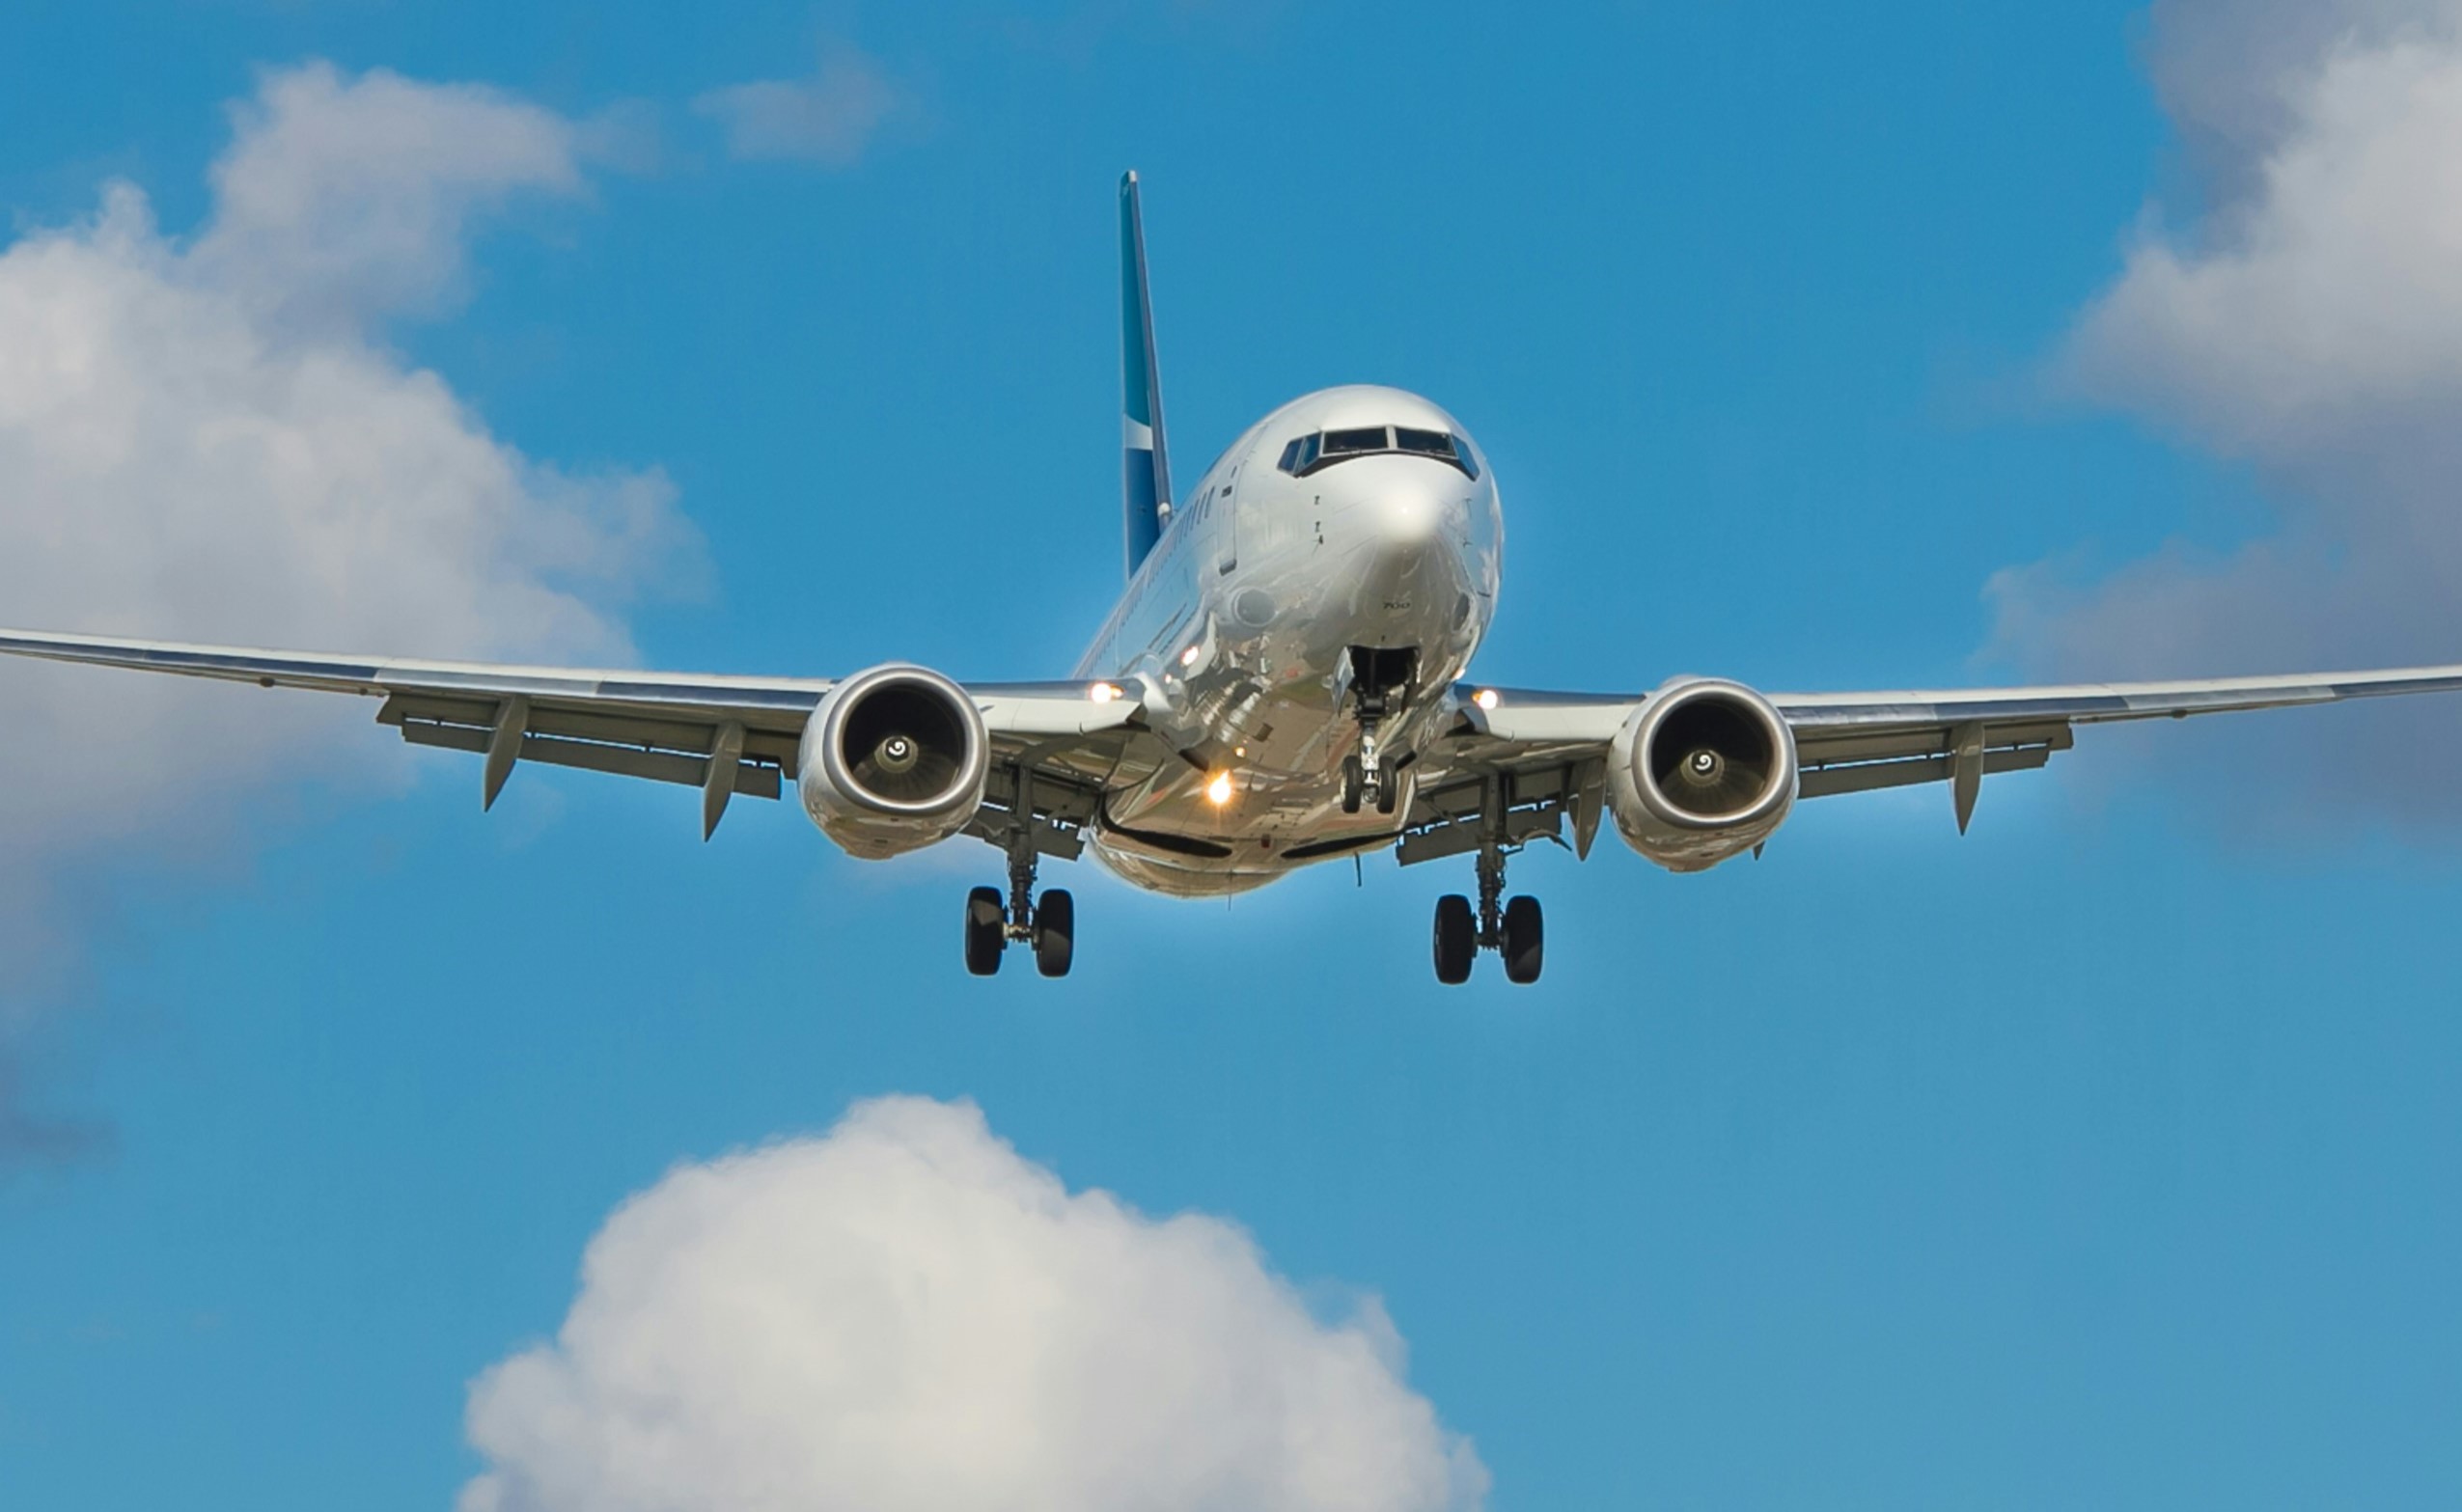 Καμπανάκι ειδικών: Η κλιματική αλλαγή υπεύθυνη για περισσότερες αναταράξεις σε πτήσεις